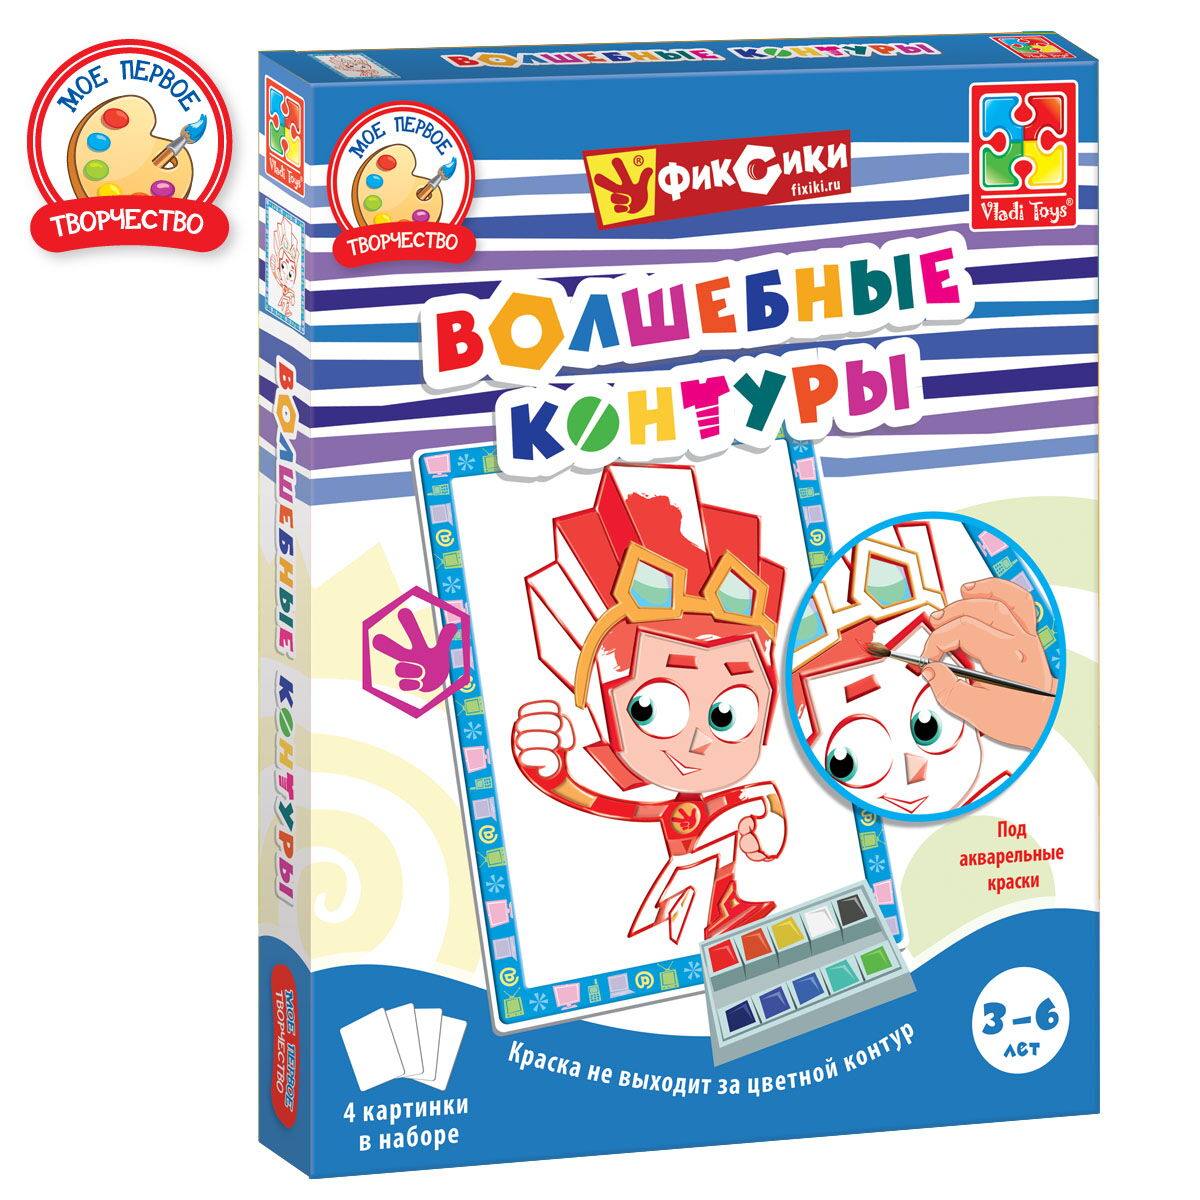 Детский набор для творчества Vladi Toys Волшебные контуры Фиксики VT4402-22 - цена